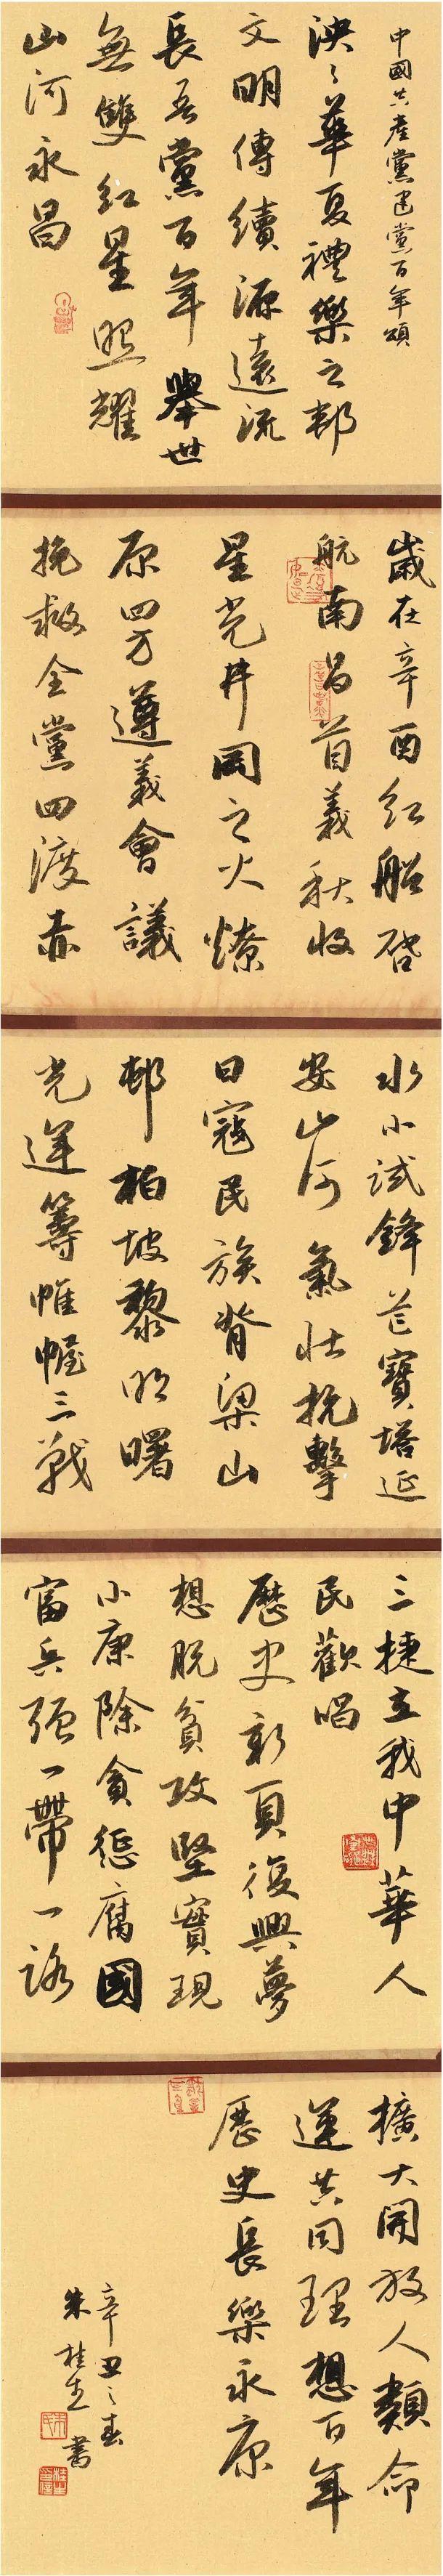 党在我心中——庆祝中国共产党成立100周年罗湖区优秀书法作品展”在罗湖 